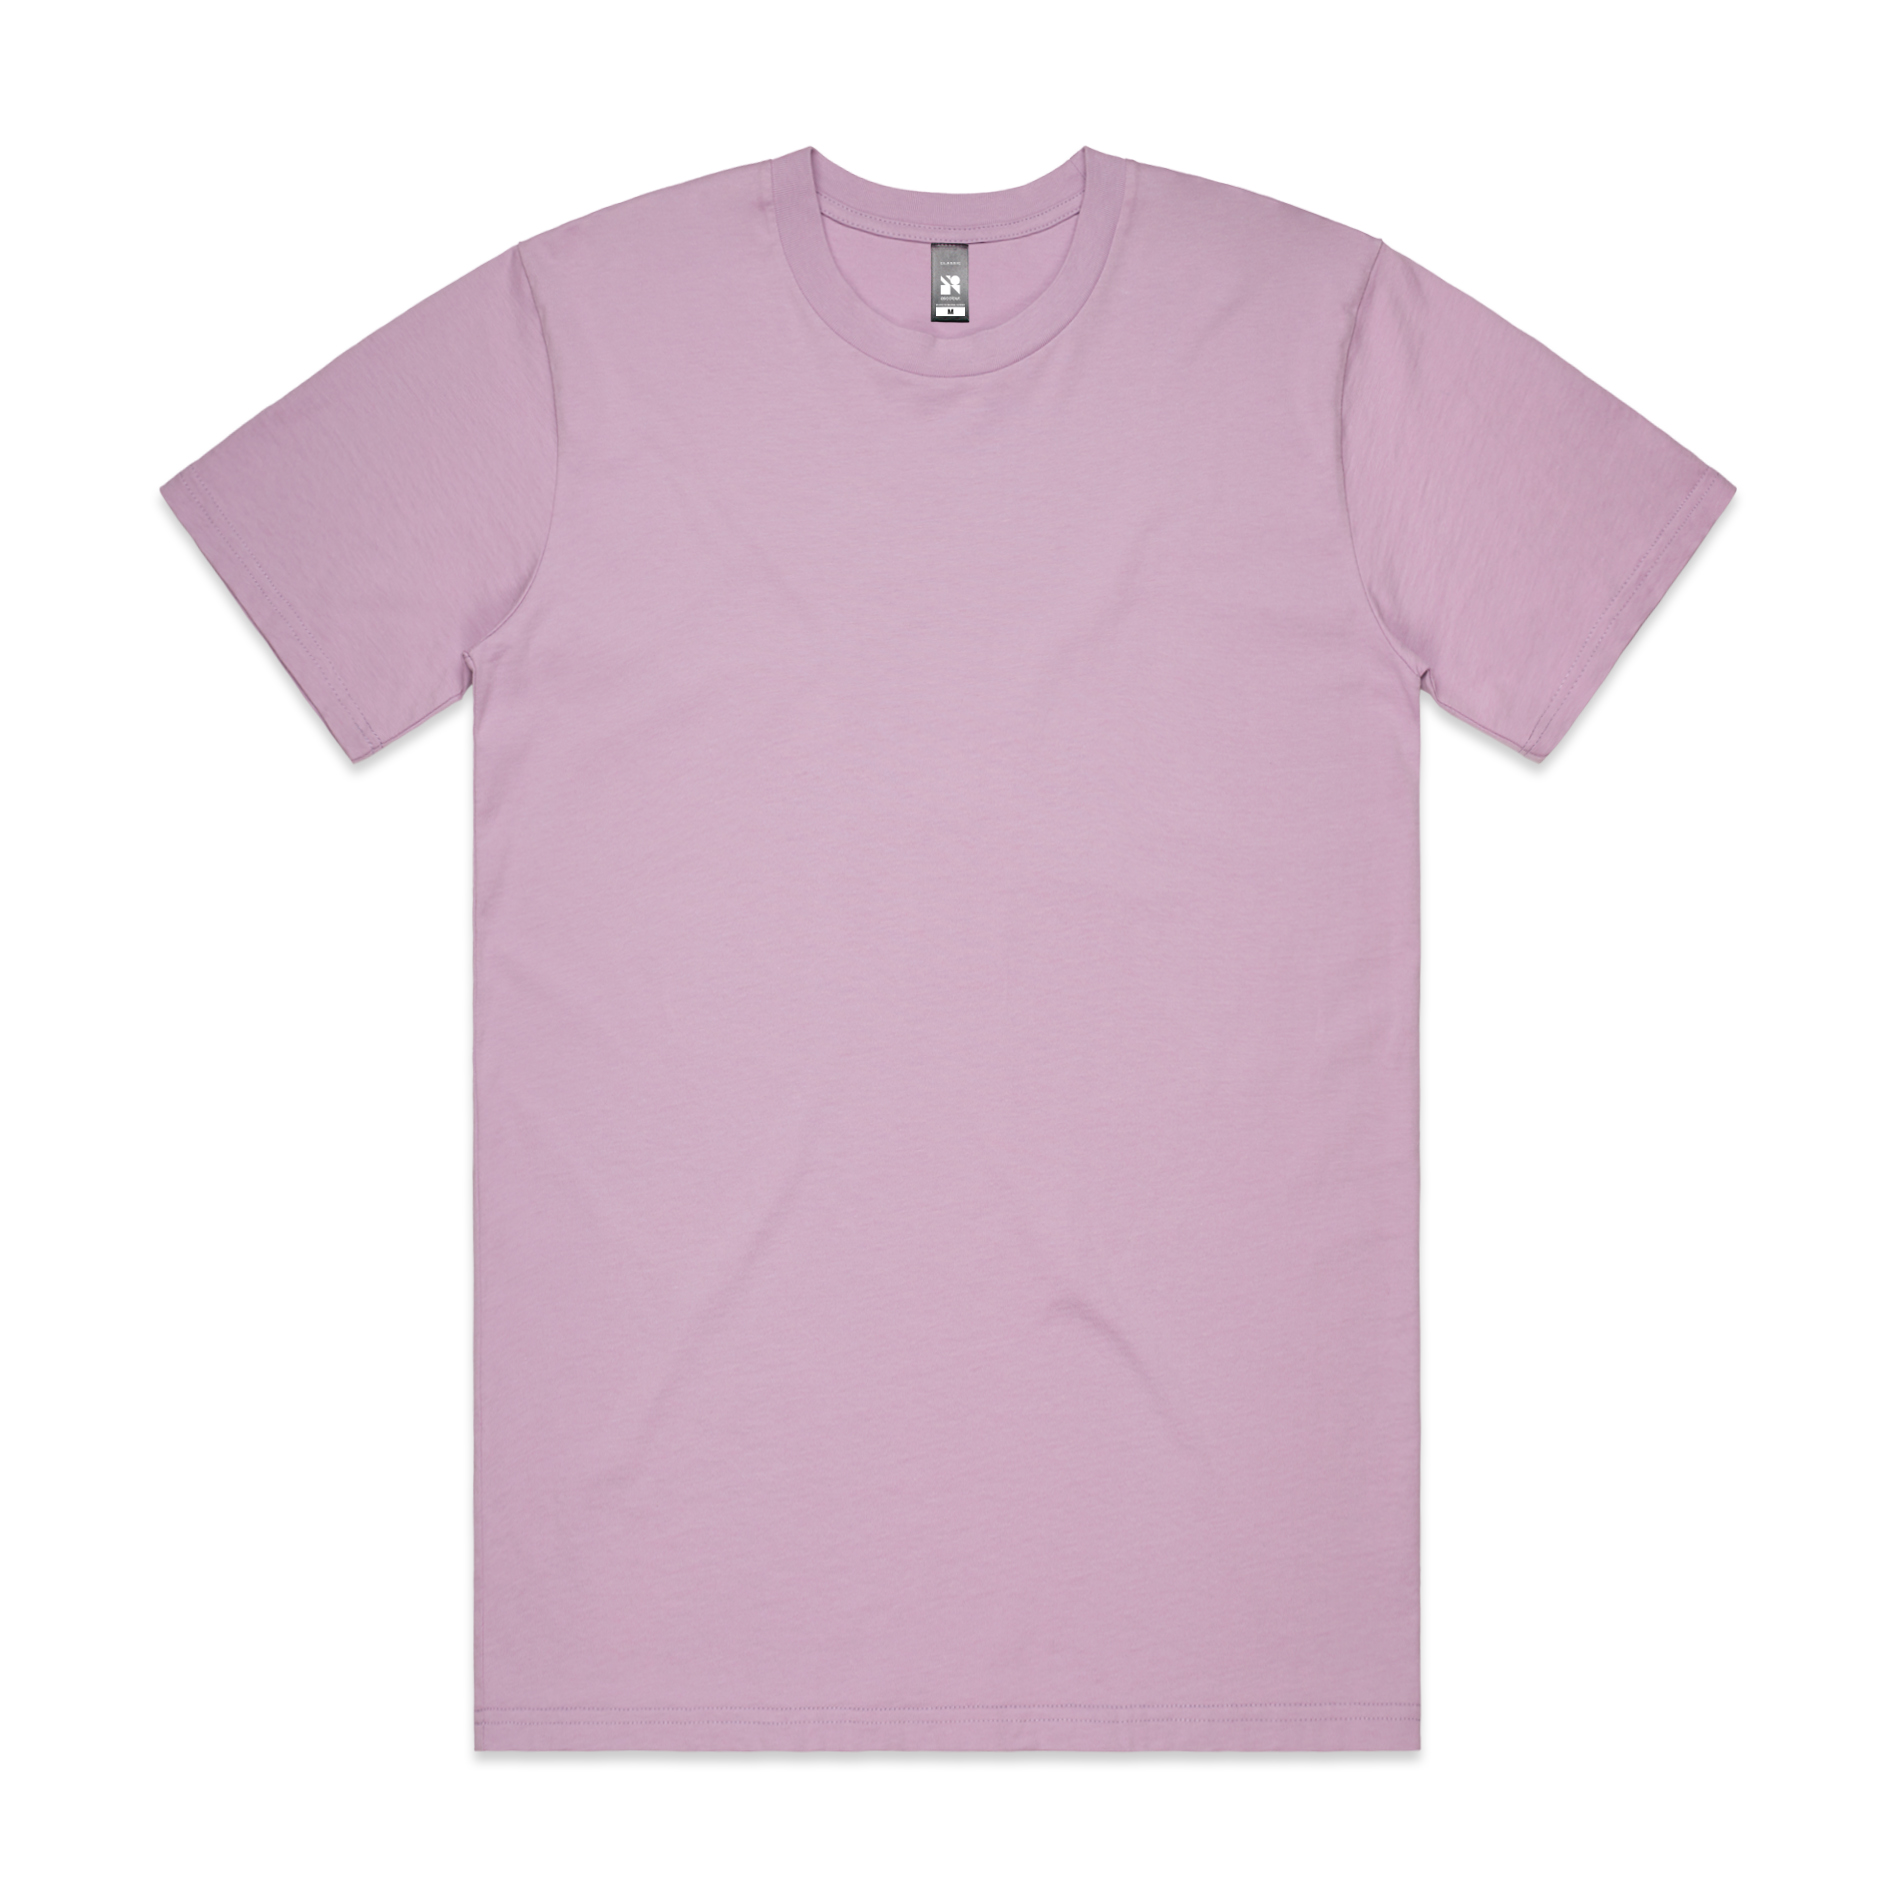 Men's AS Colour Classic Tee - Lavender - Uniform Edit